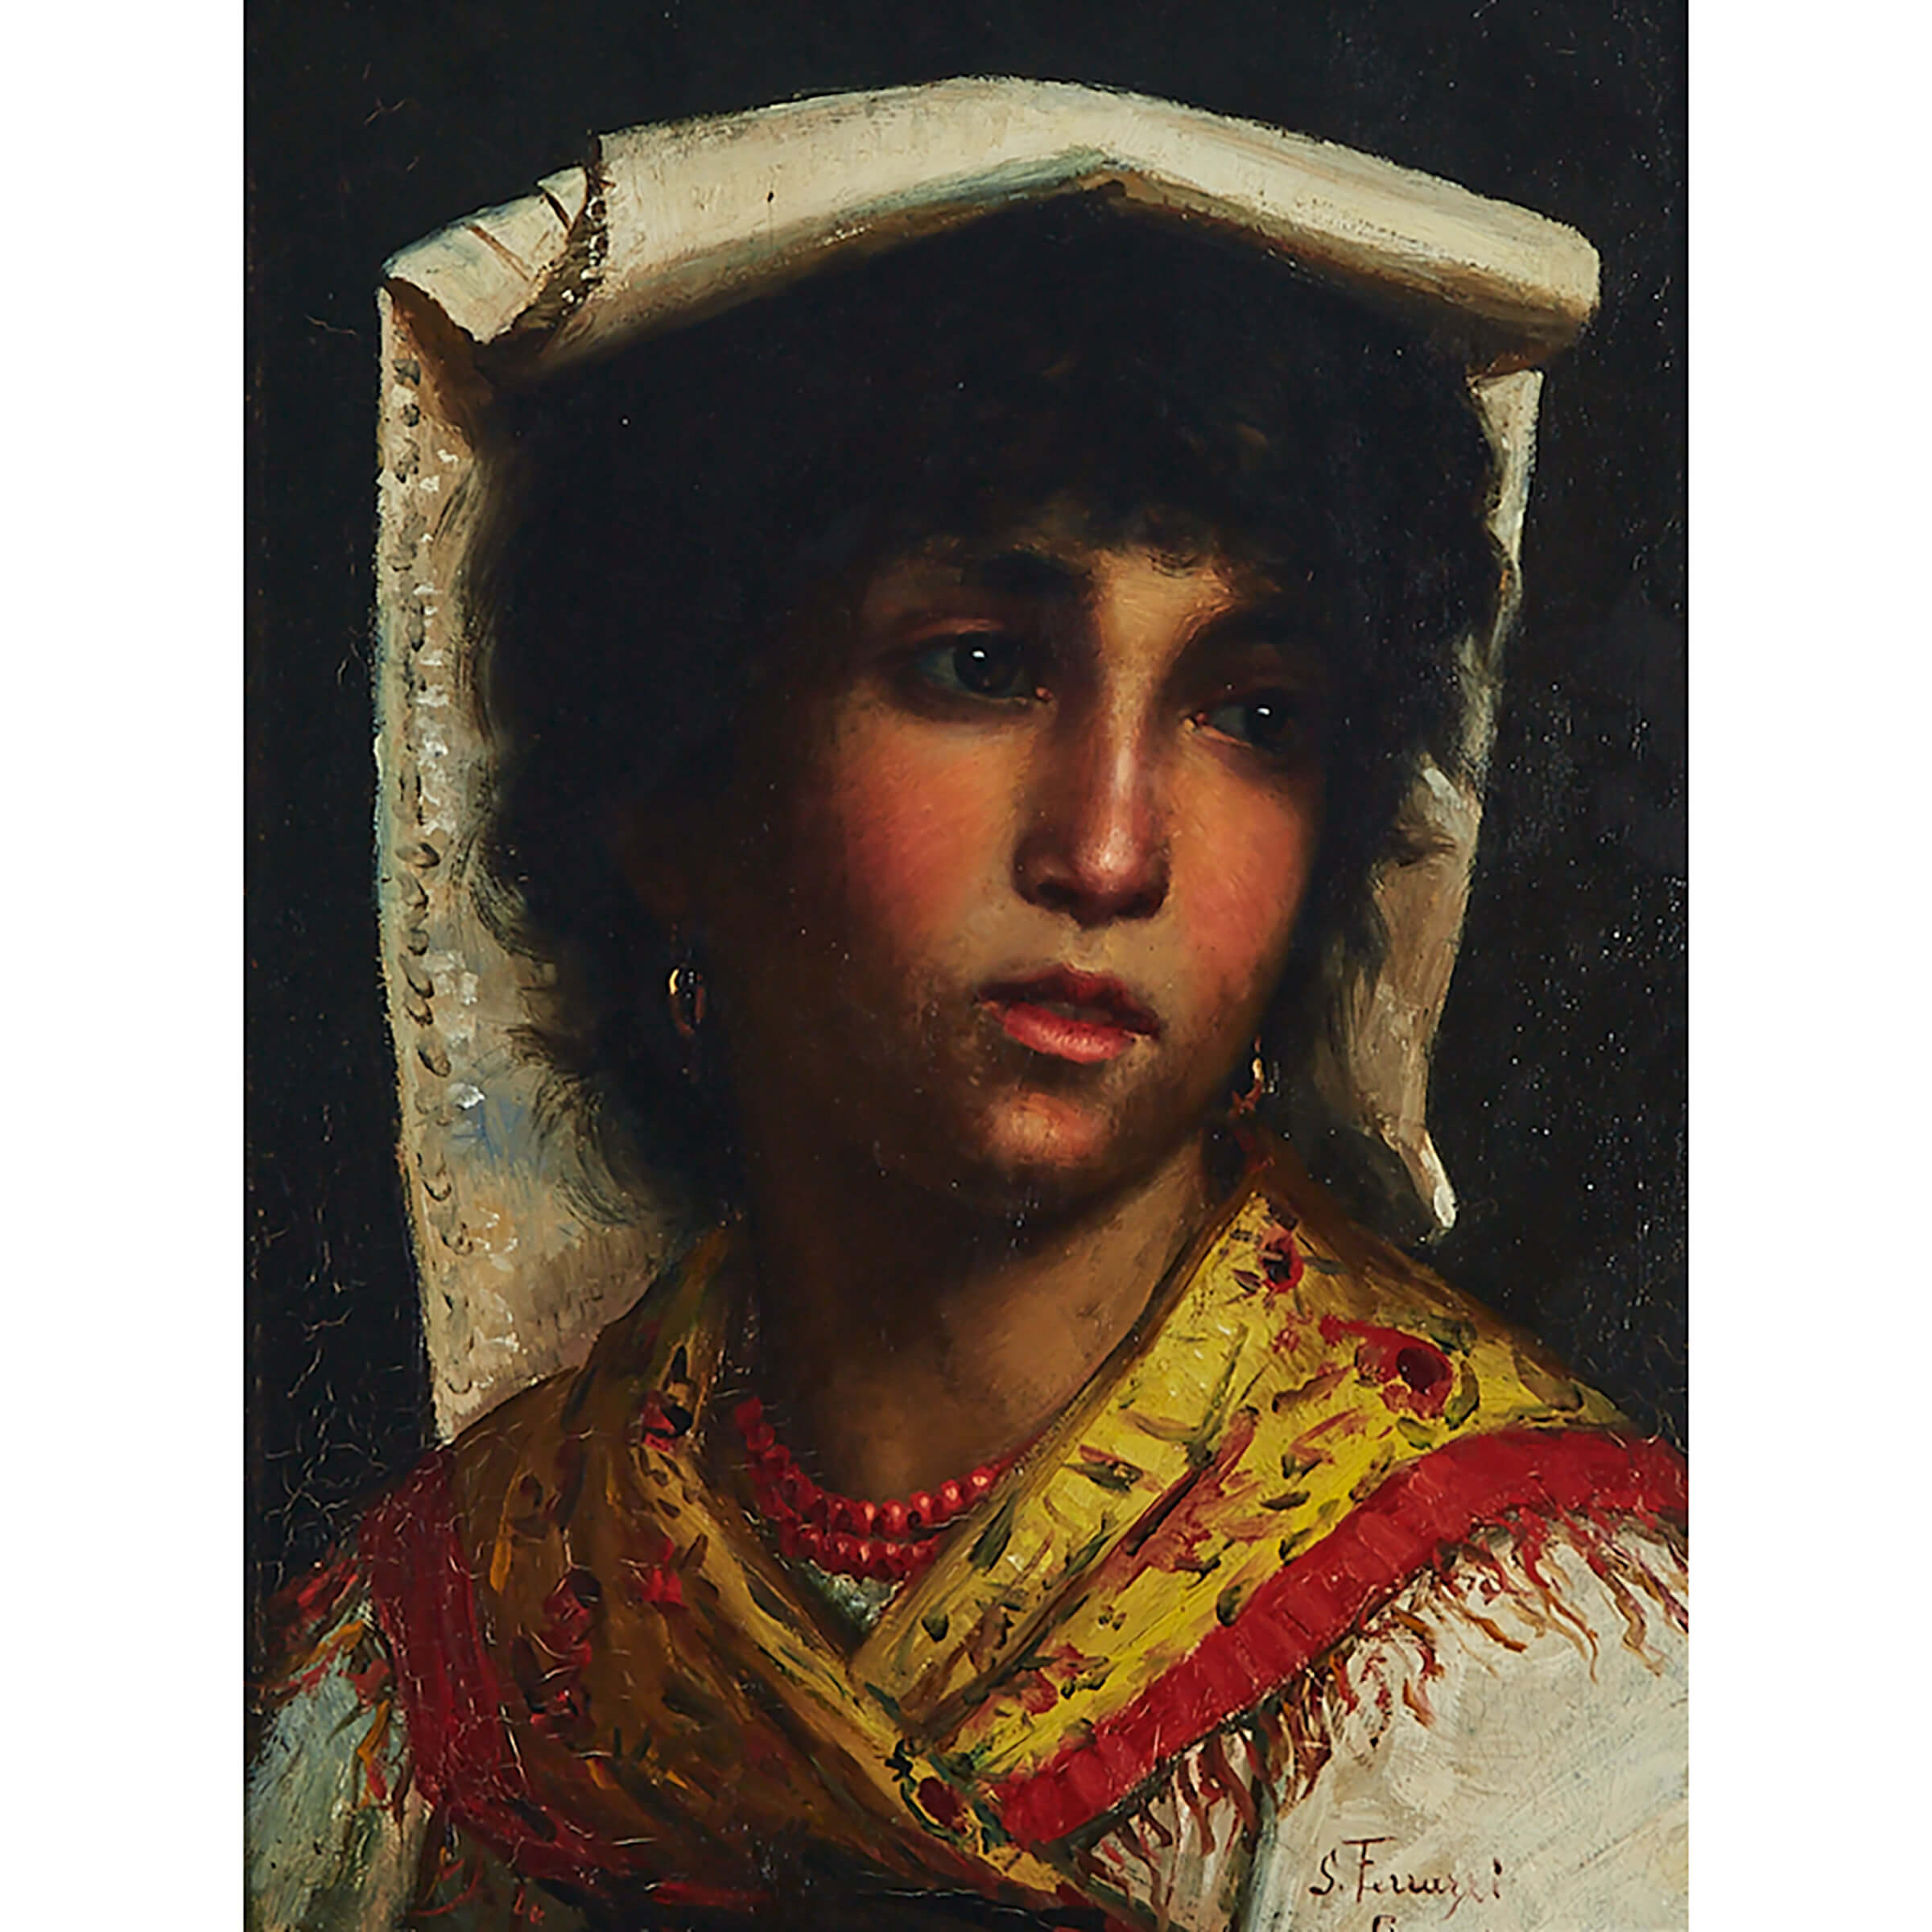 Luigi Ferrazzi (1850-1897), Italian